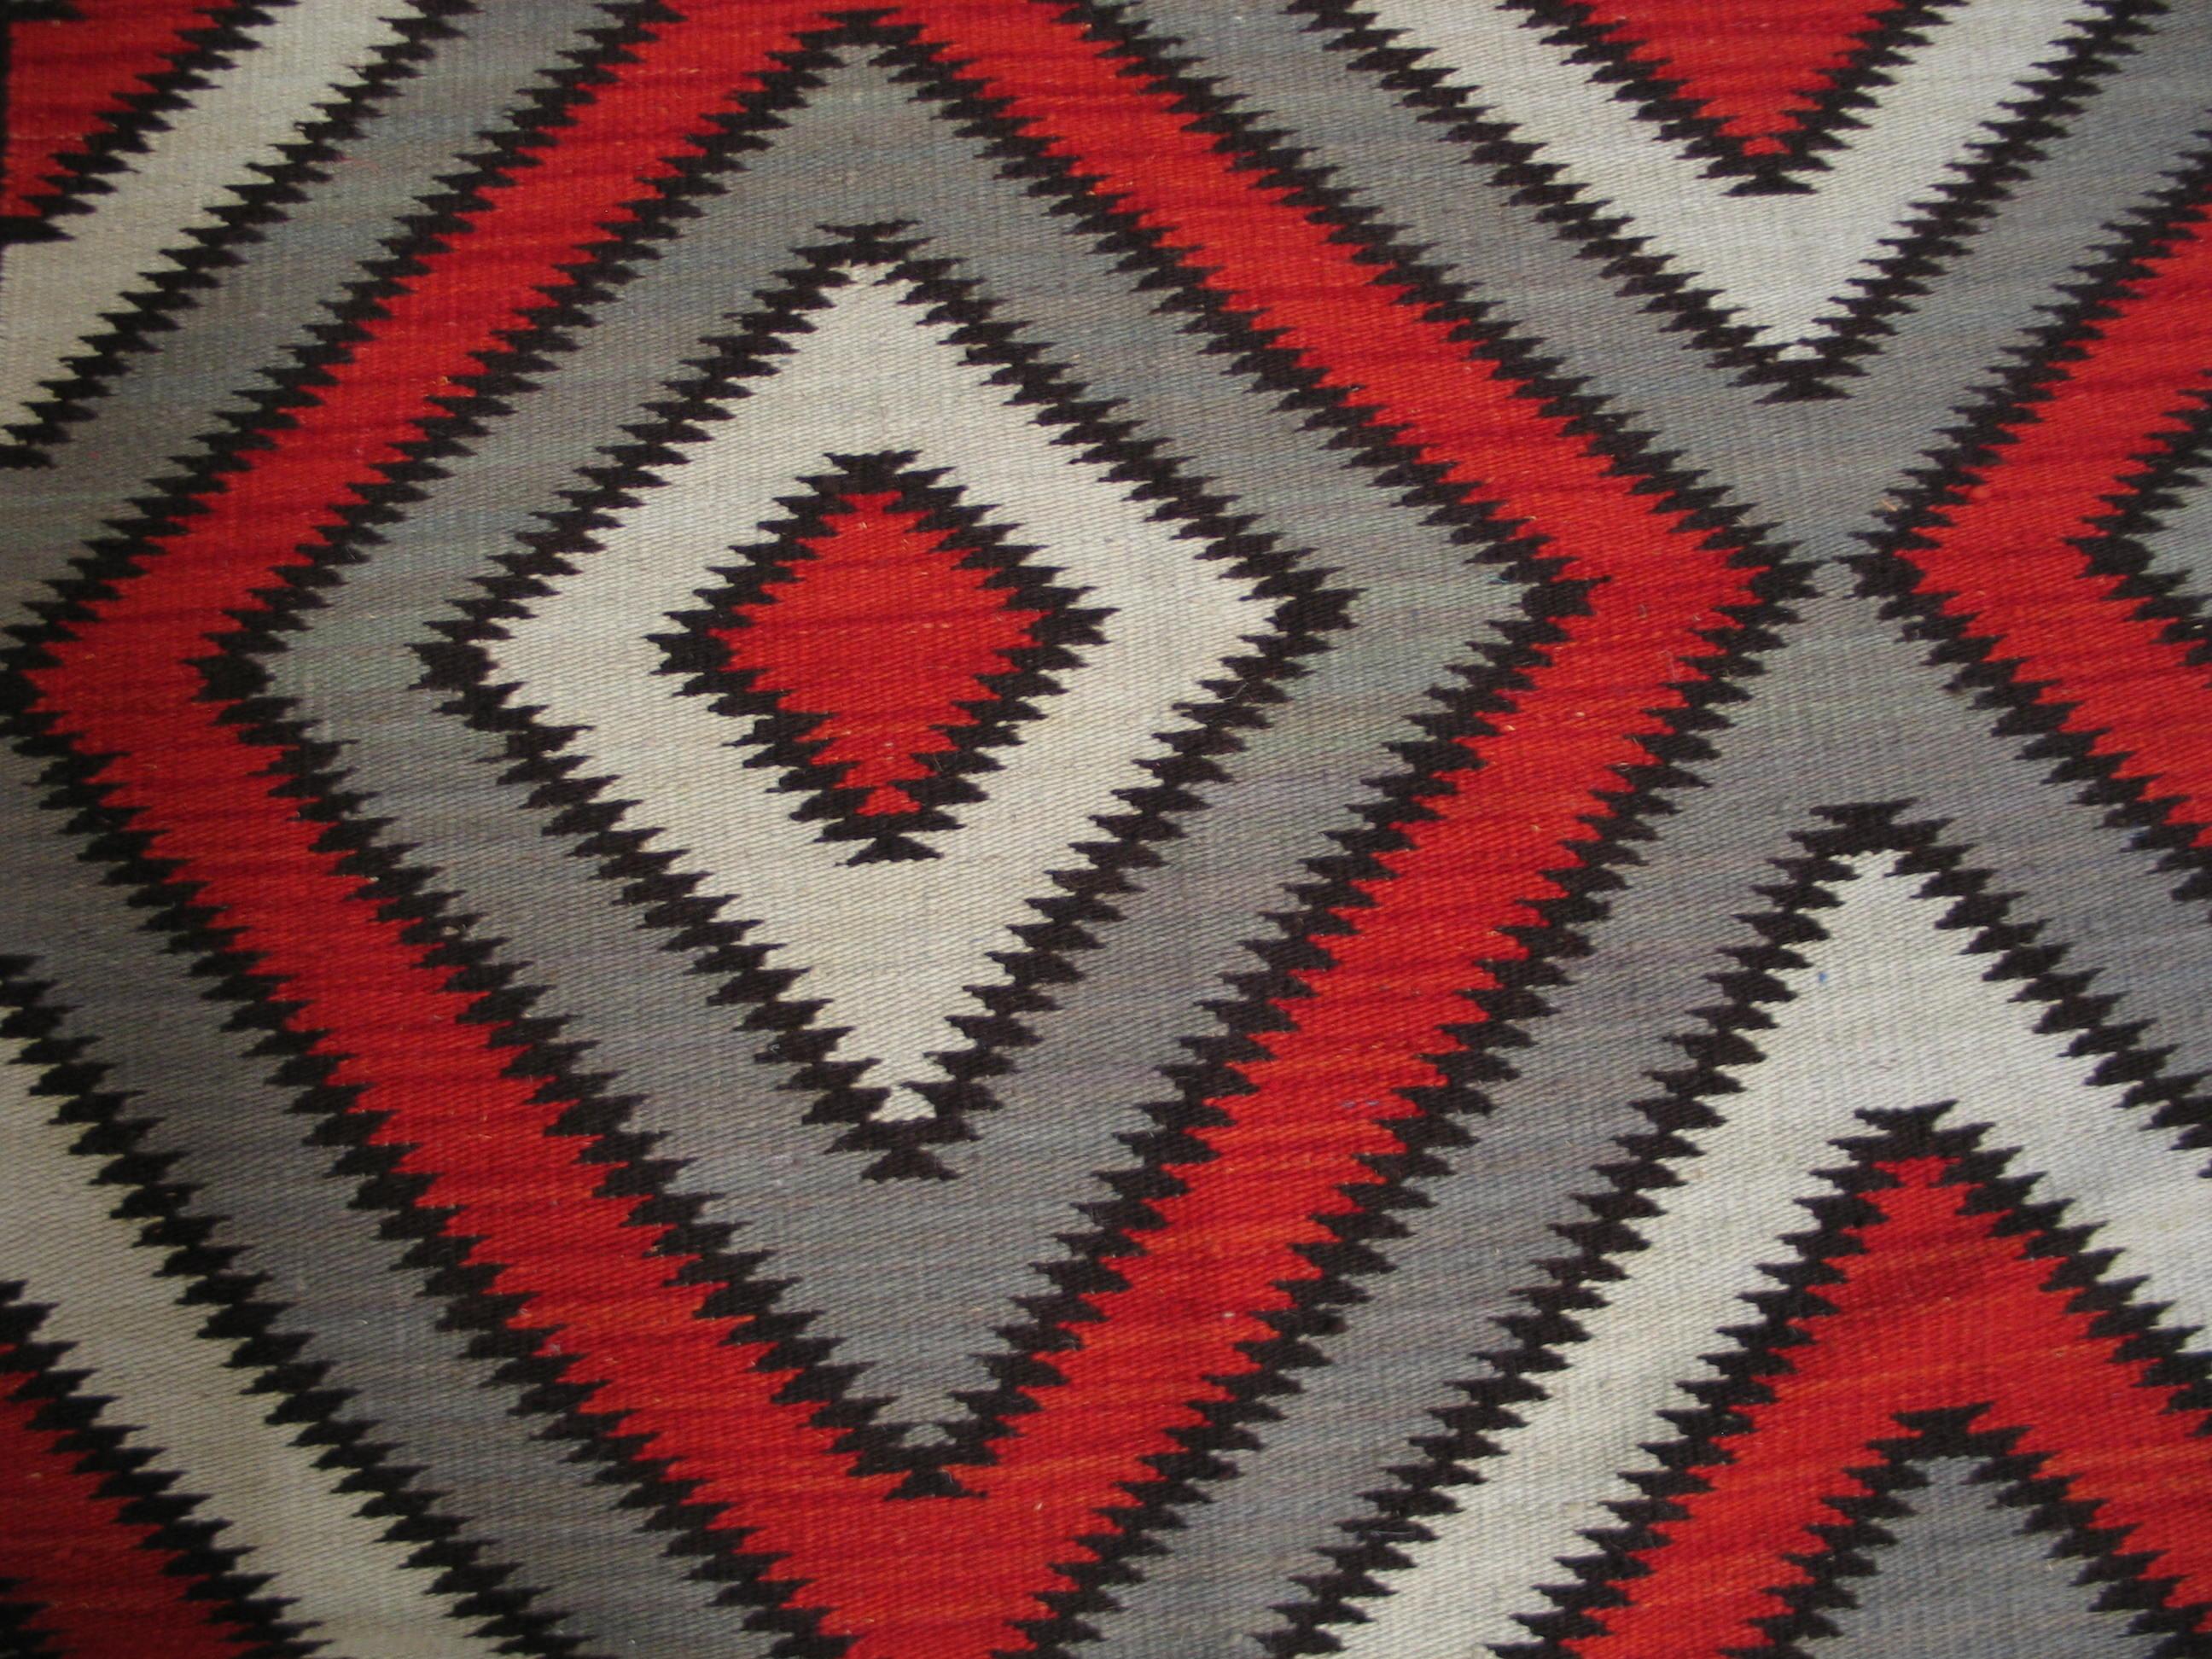 Contemporary Navajo style rug 6'0